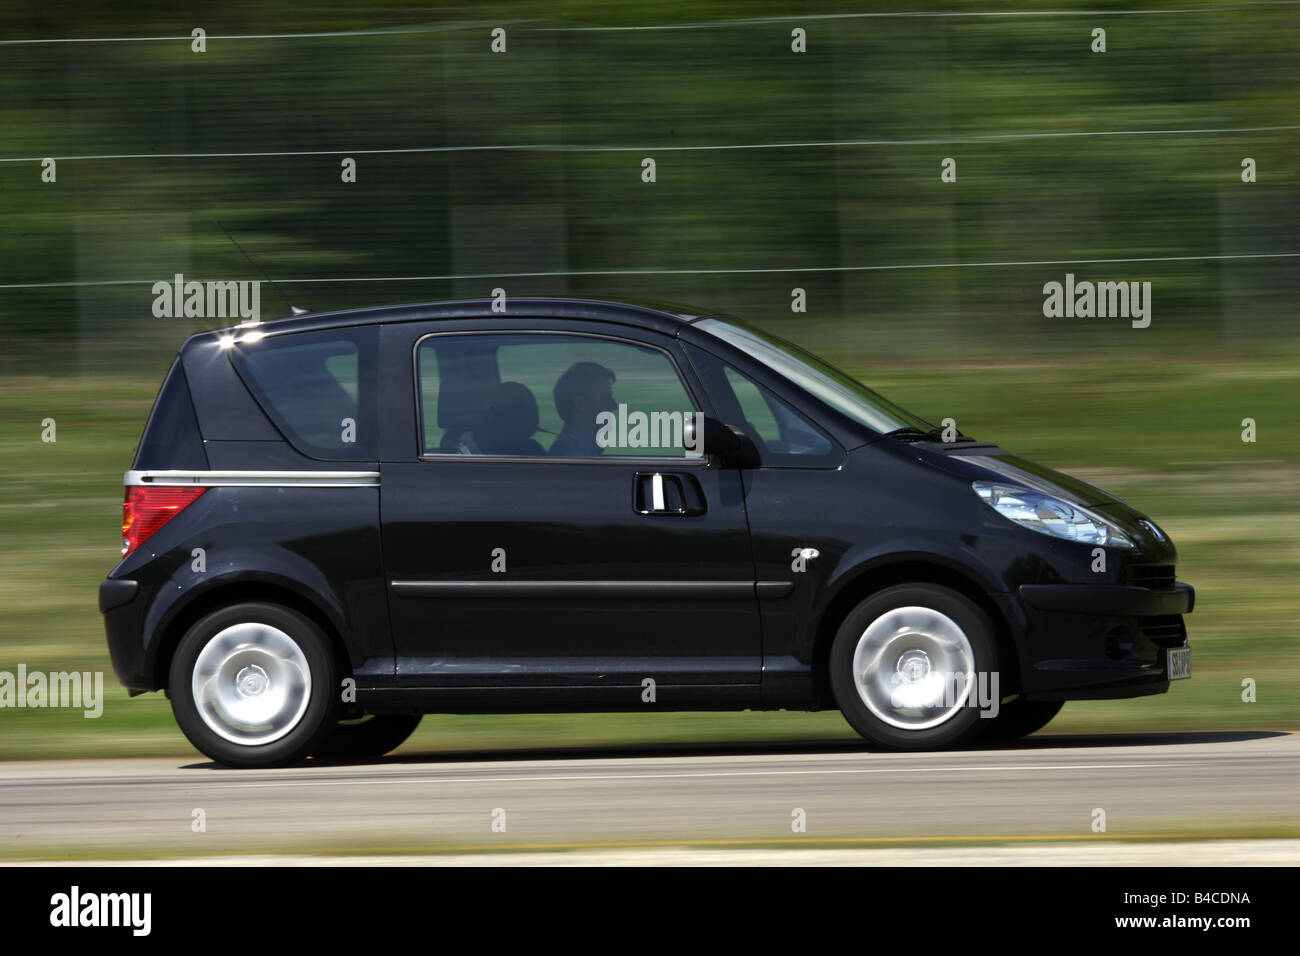 Peugeot 1007 1 4 immagini e fotografie stock ad alta risoluzione - Alamy